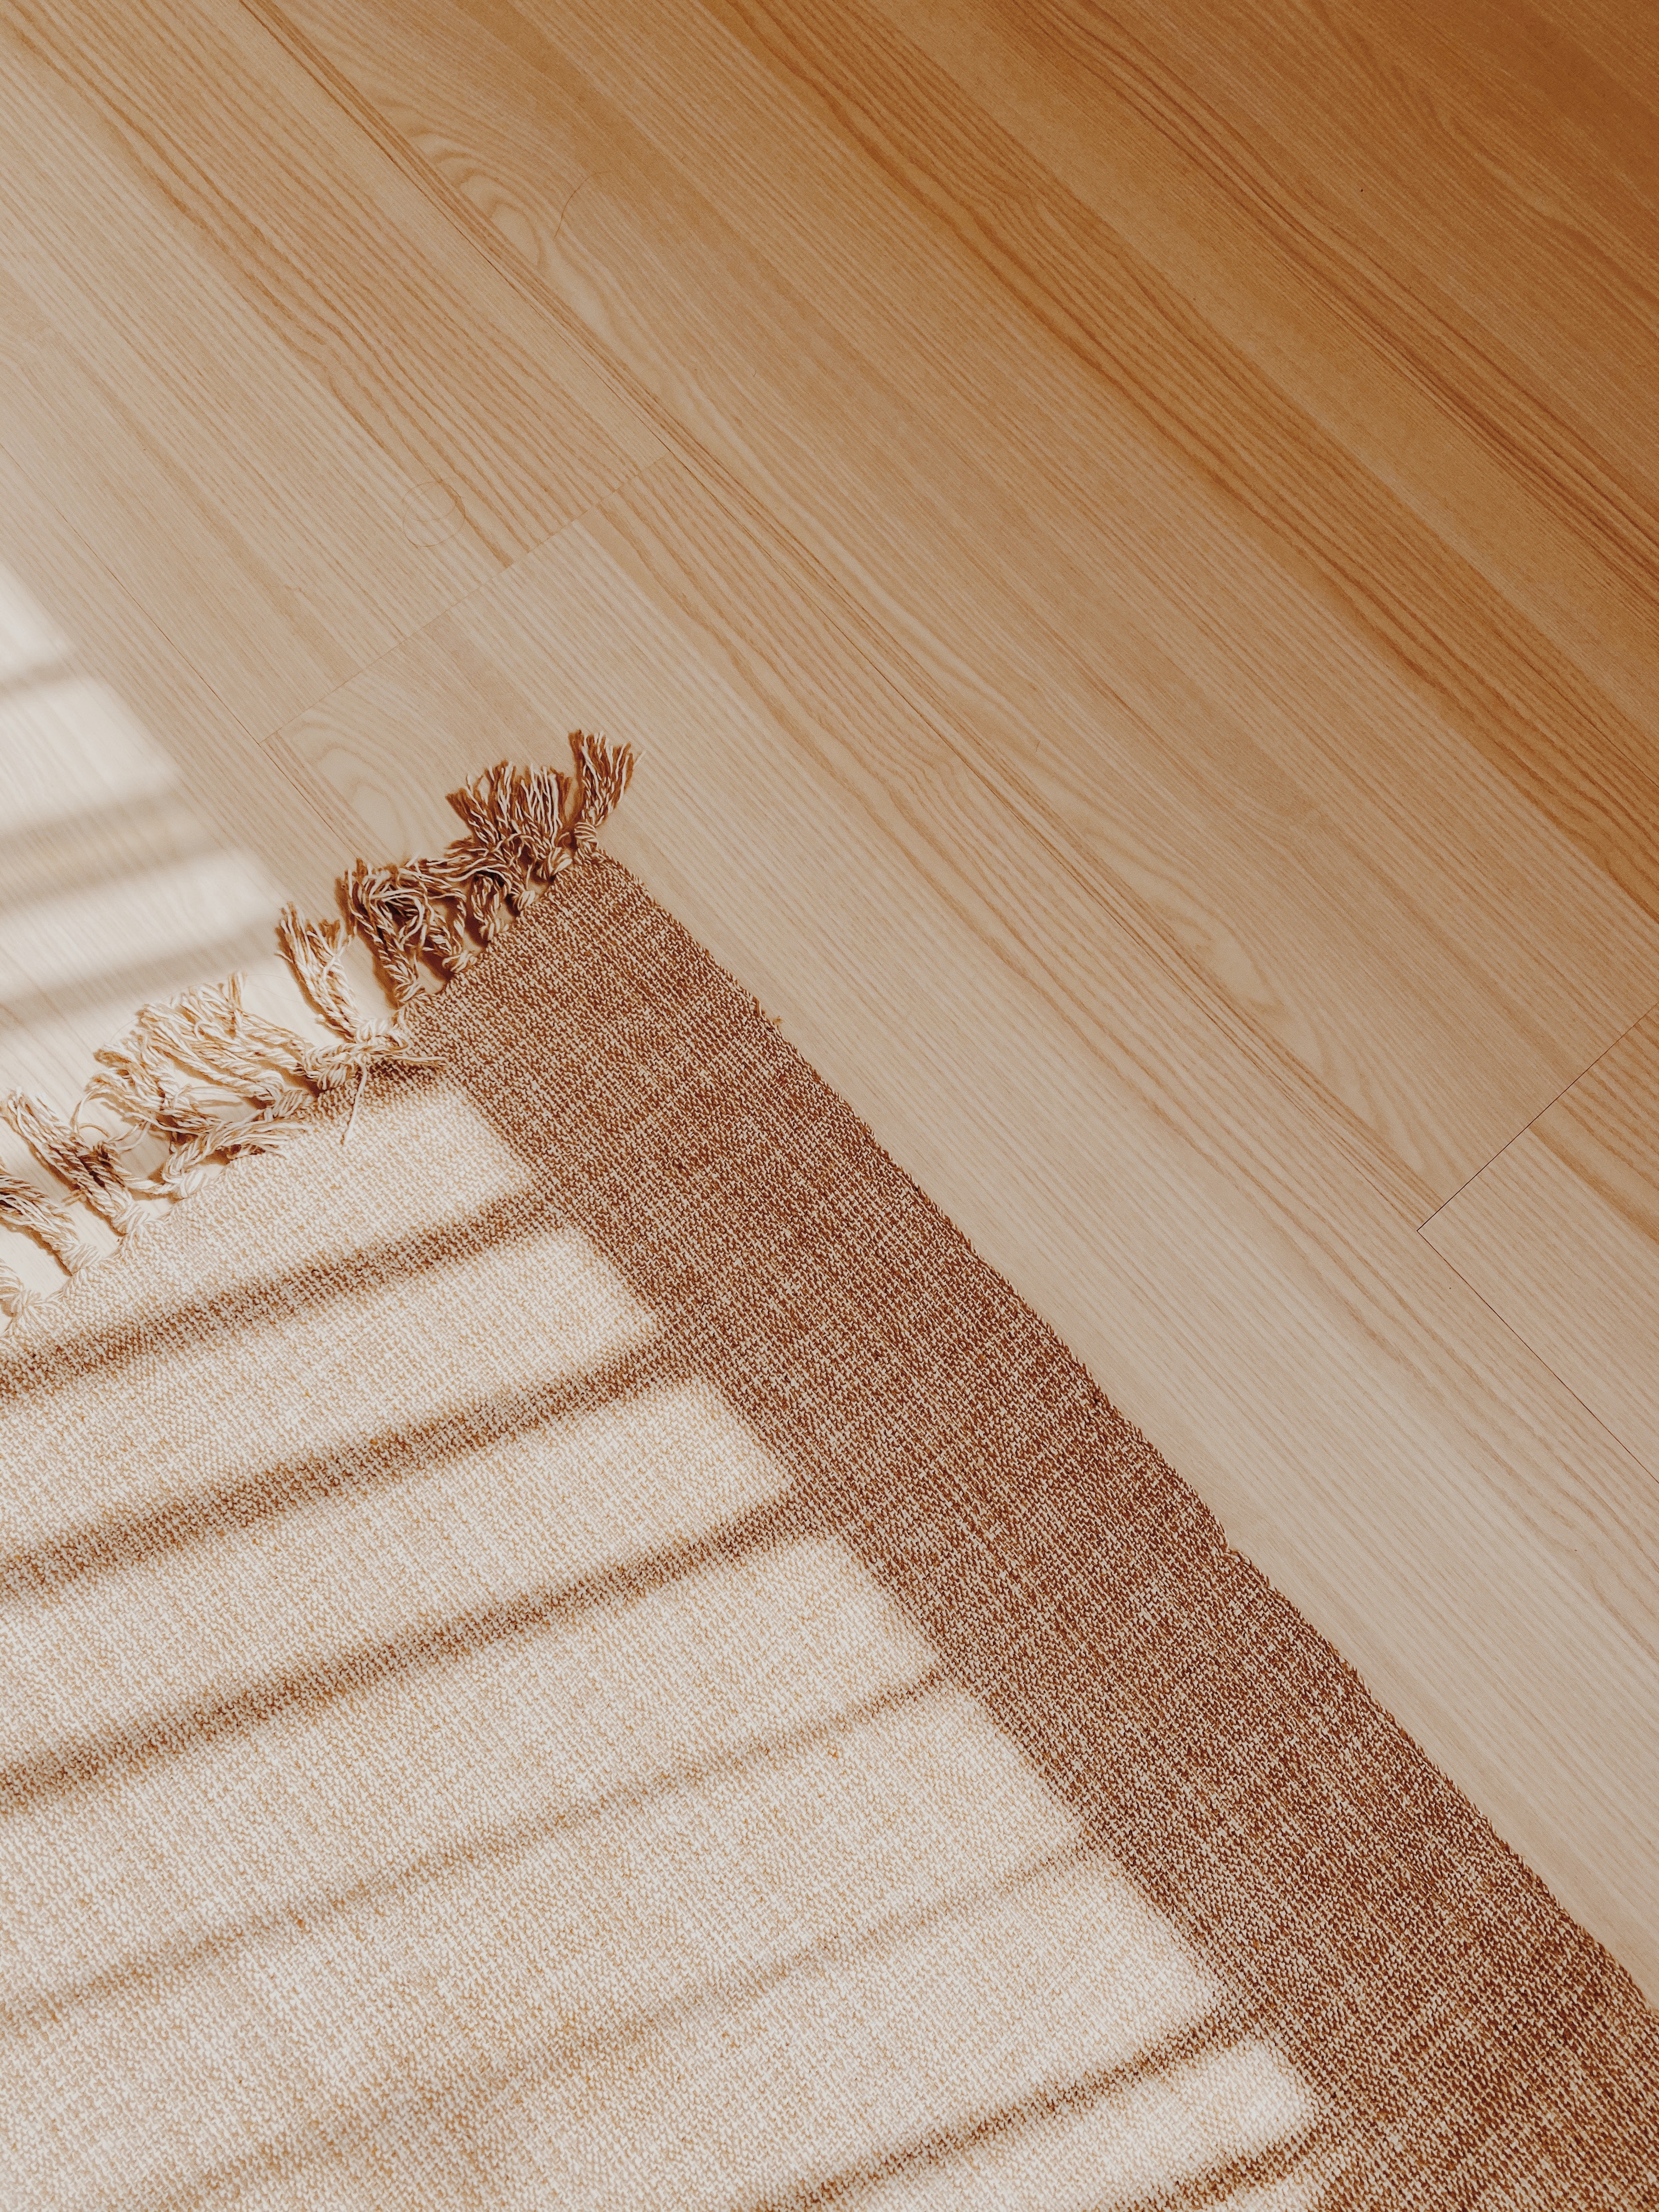 carpet on hardwood floor